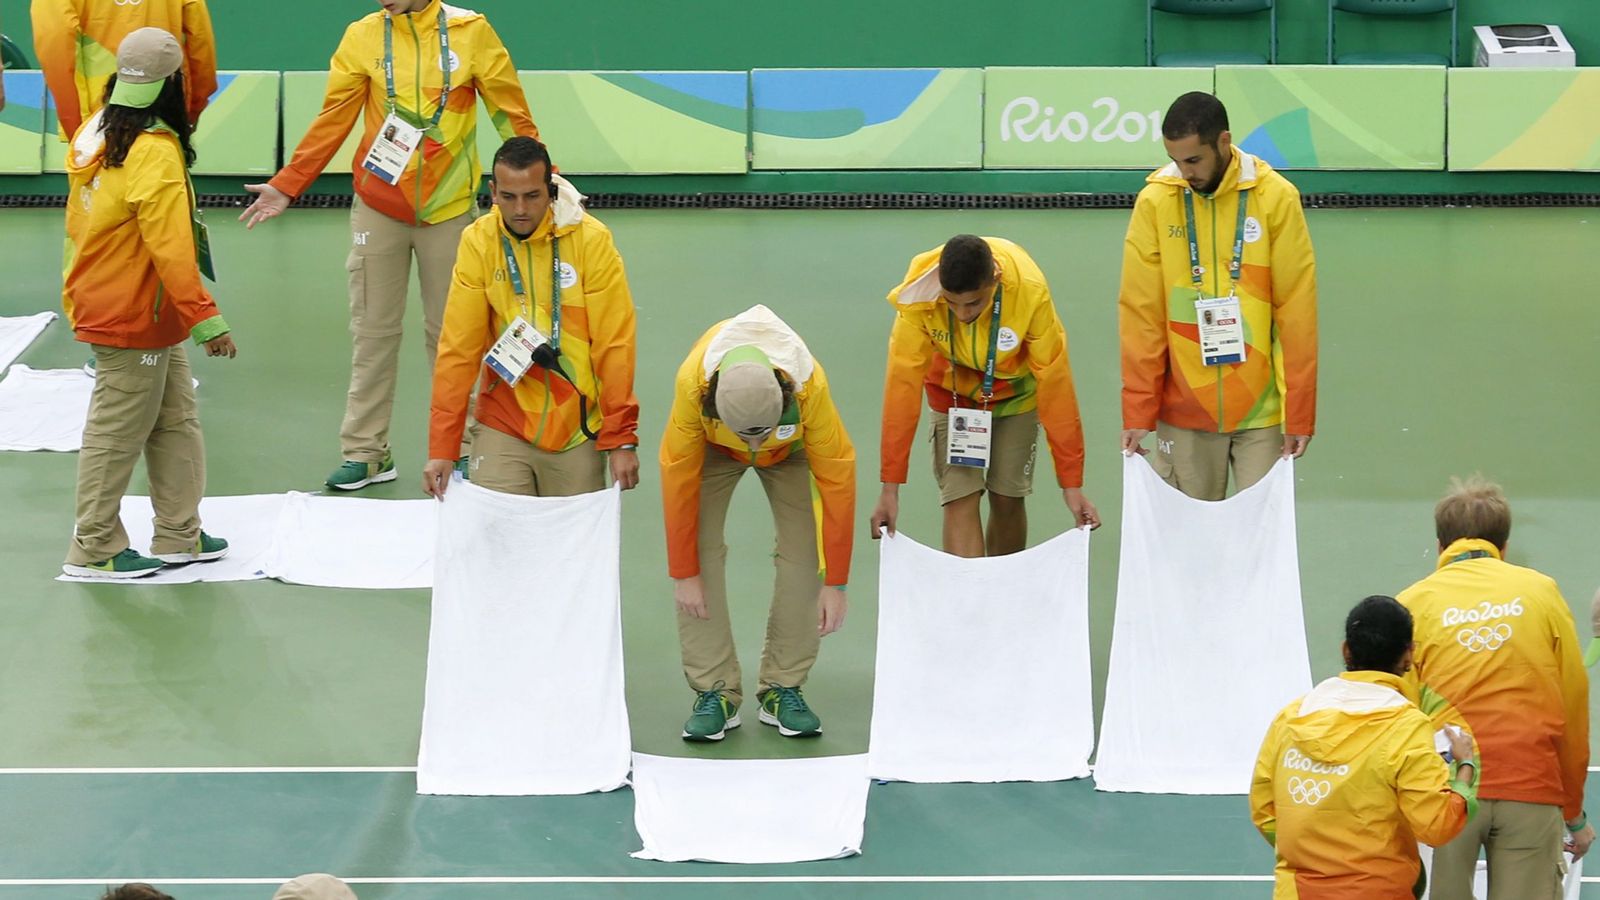 Foto: Voluntarios intentando achicar el agua de la pista de tenis de Río (Michael Reynorlds/EFE)